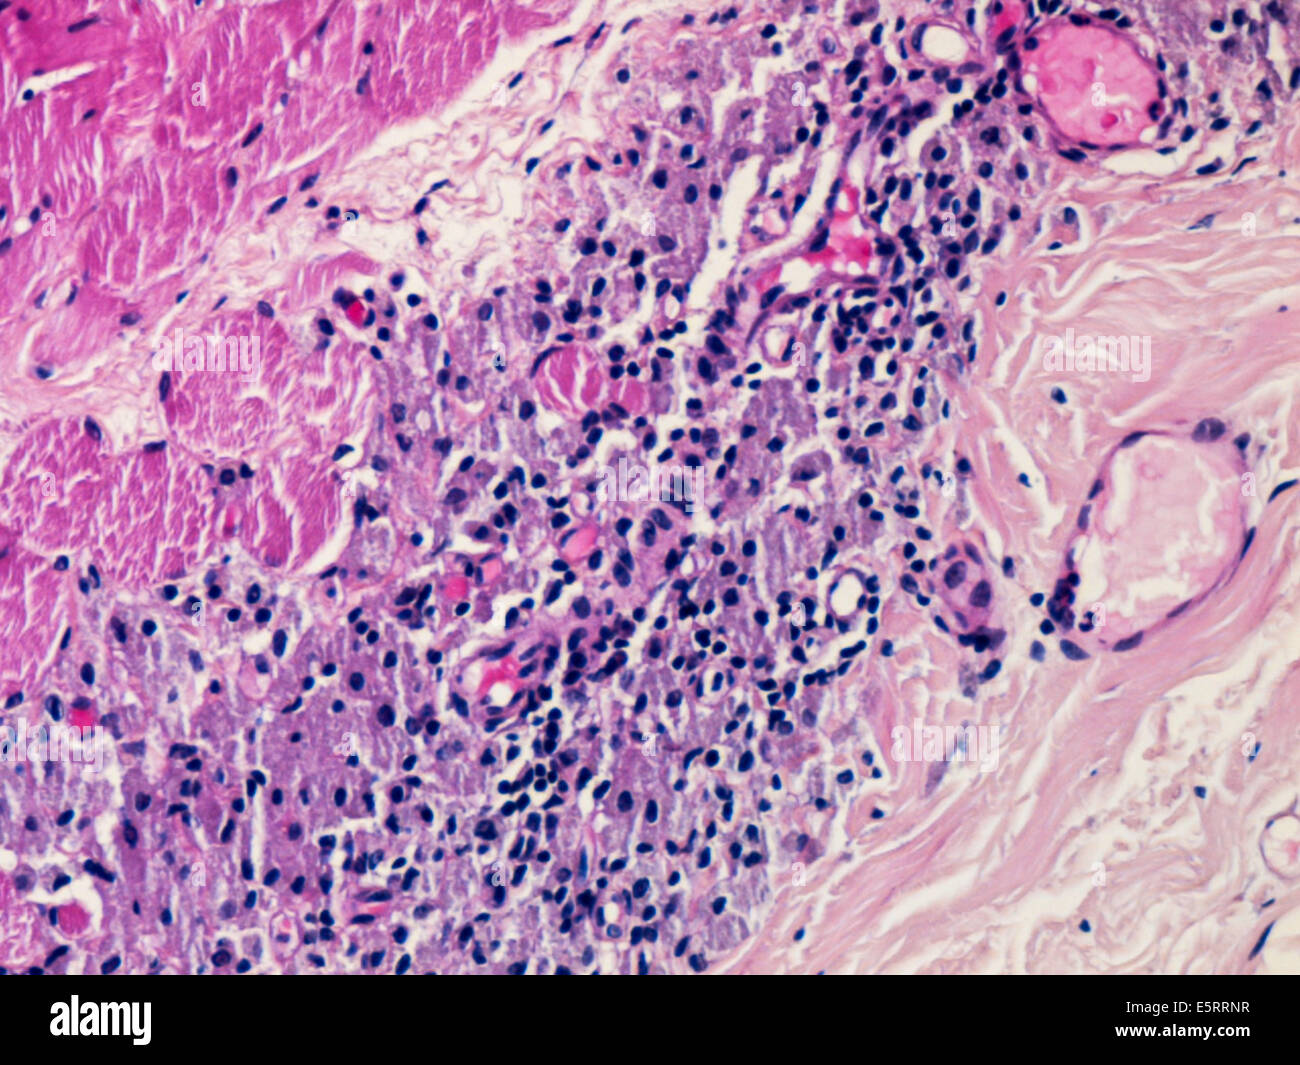 Leichte Schliffbild eines Abschnitts durch Gewebe aus einem Musculus deltoideus Biopsie zeigt eine macrophagic Myofasciitis nach der Impfung. Stockfoto